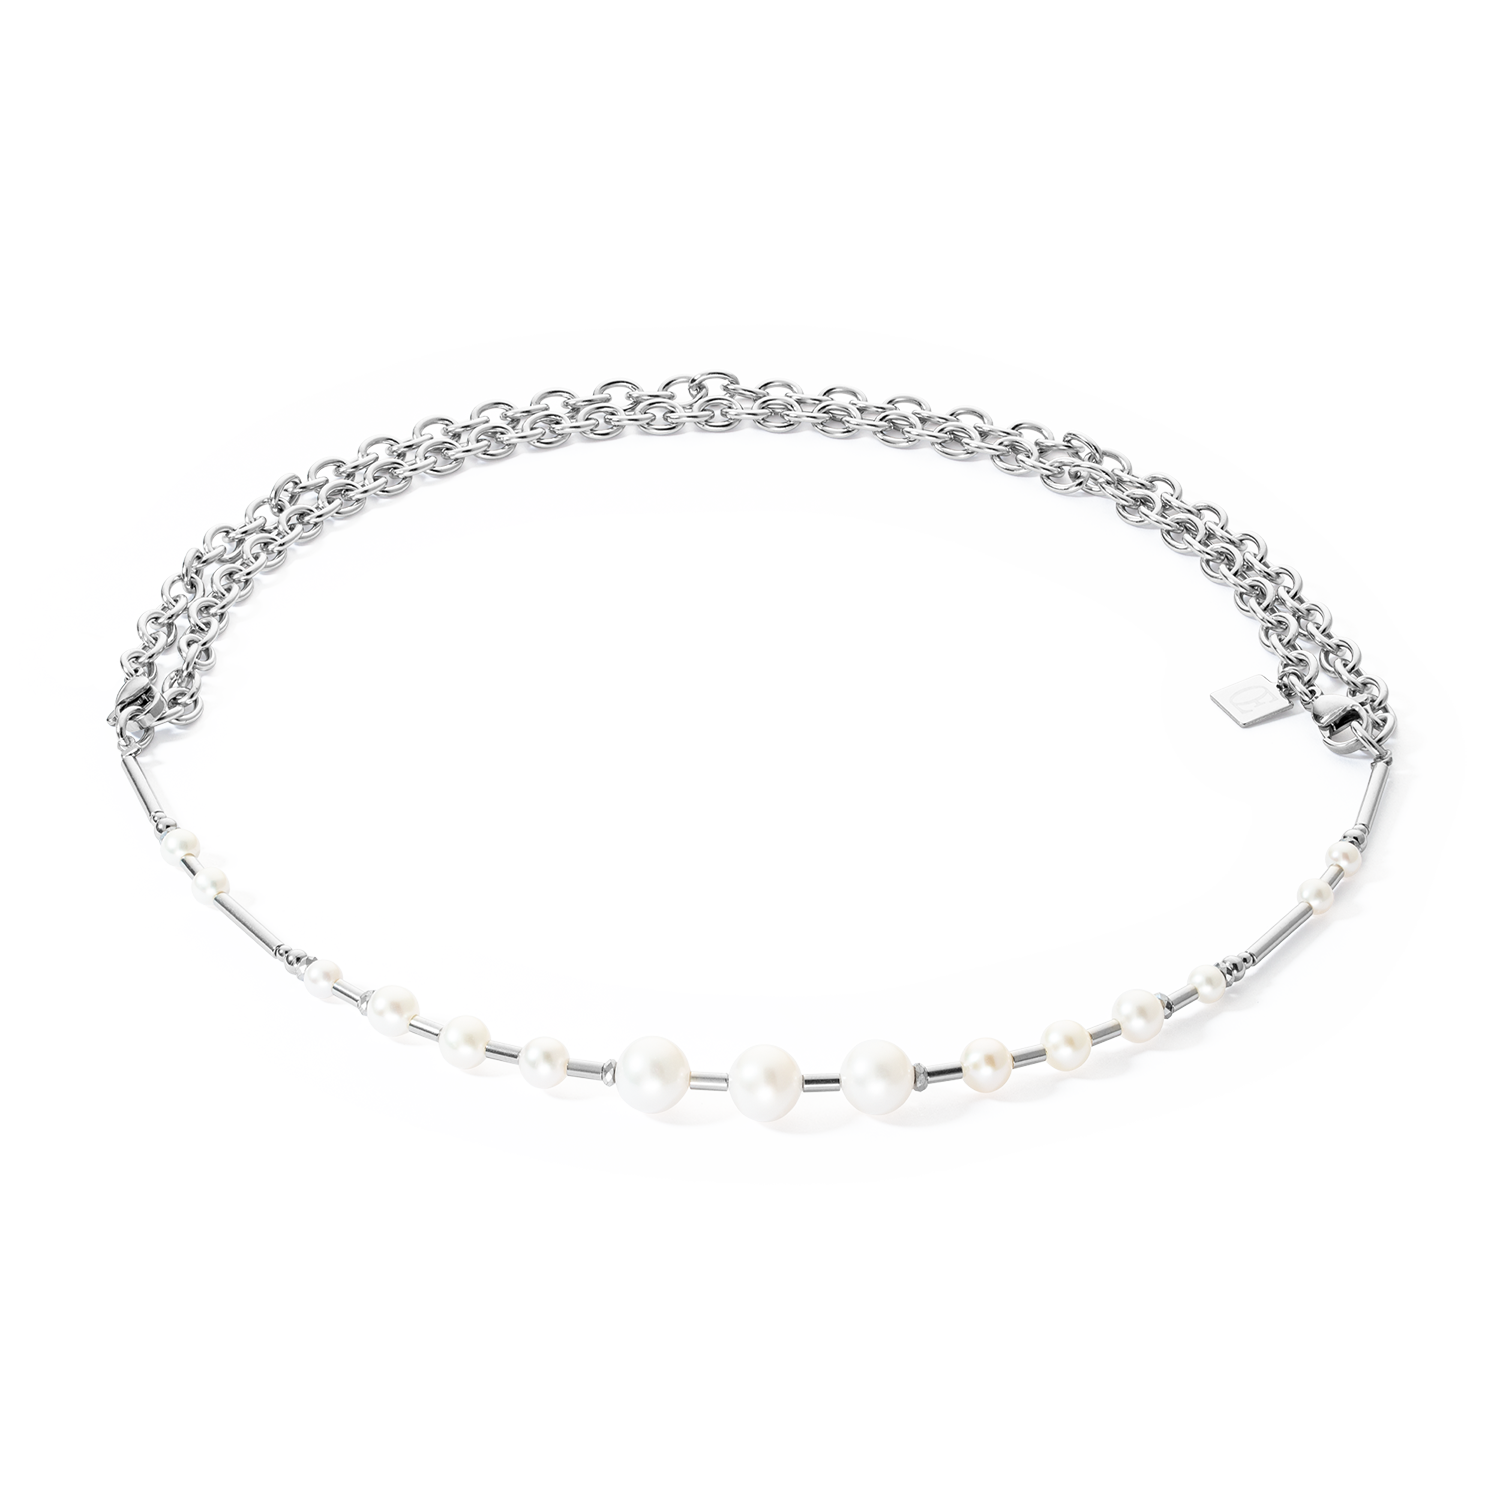 Halskette Süßwasserperlen & chain Multiwear silber